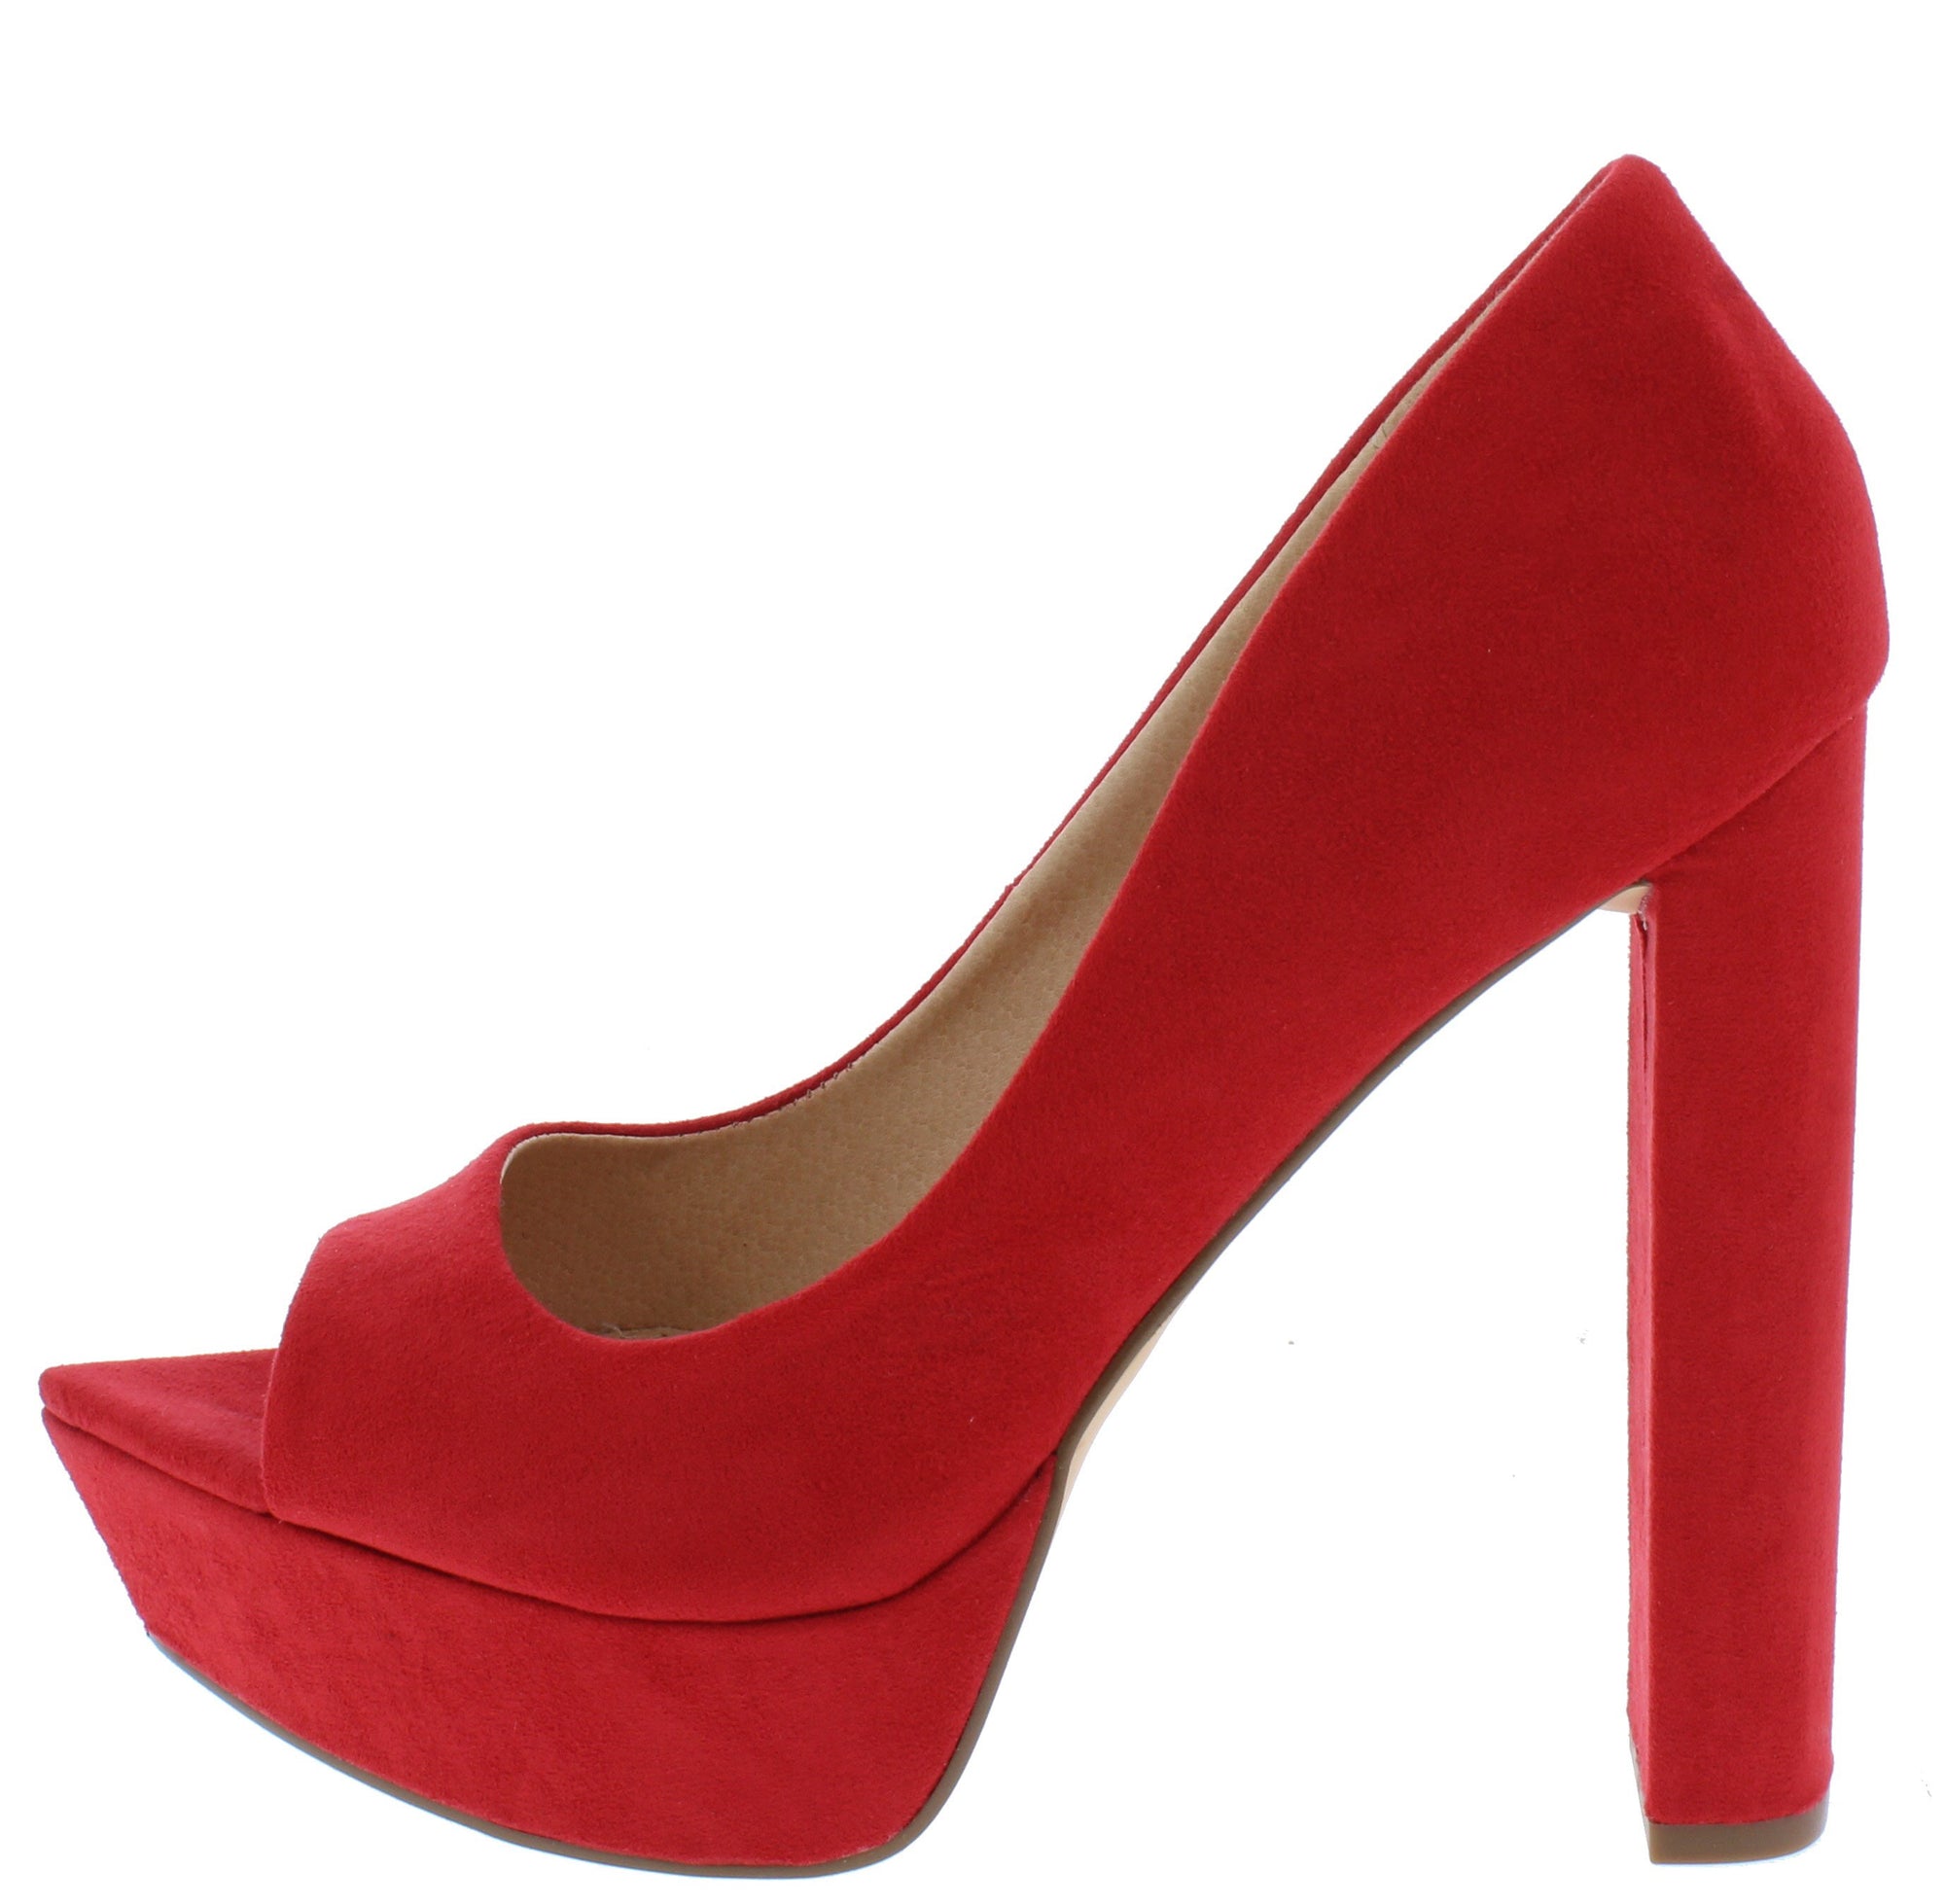 red pointed toe block heels